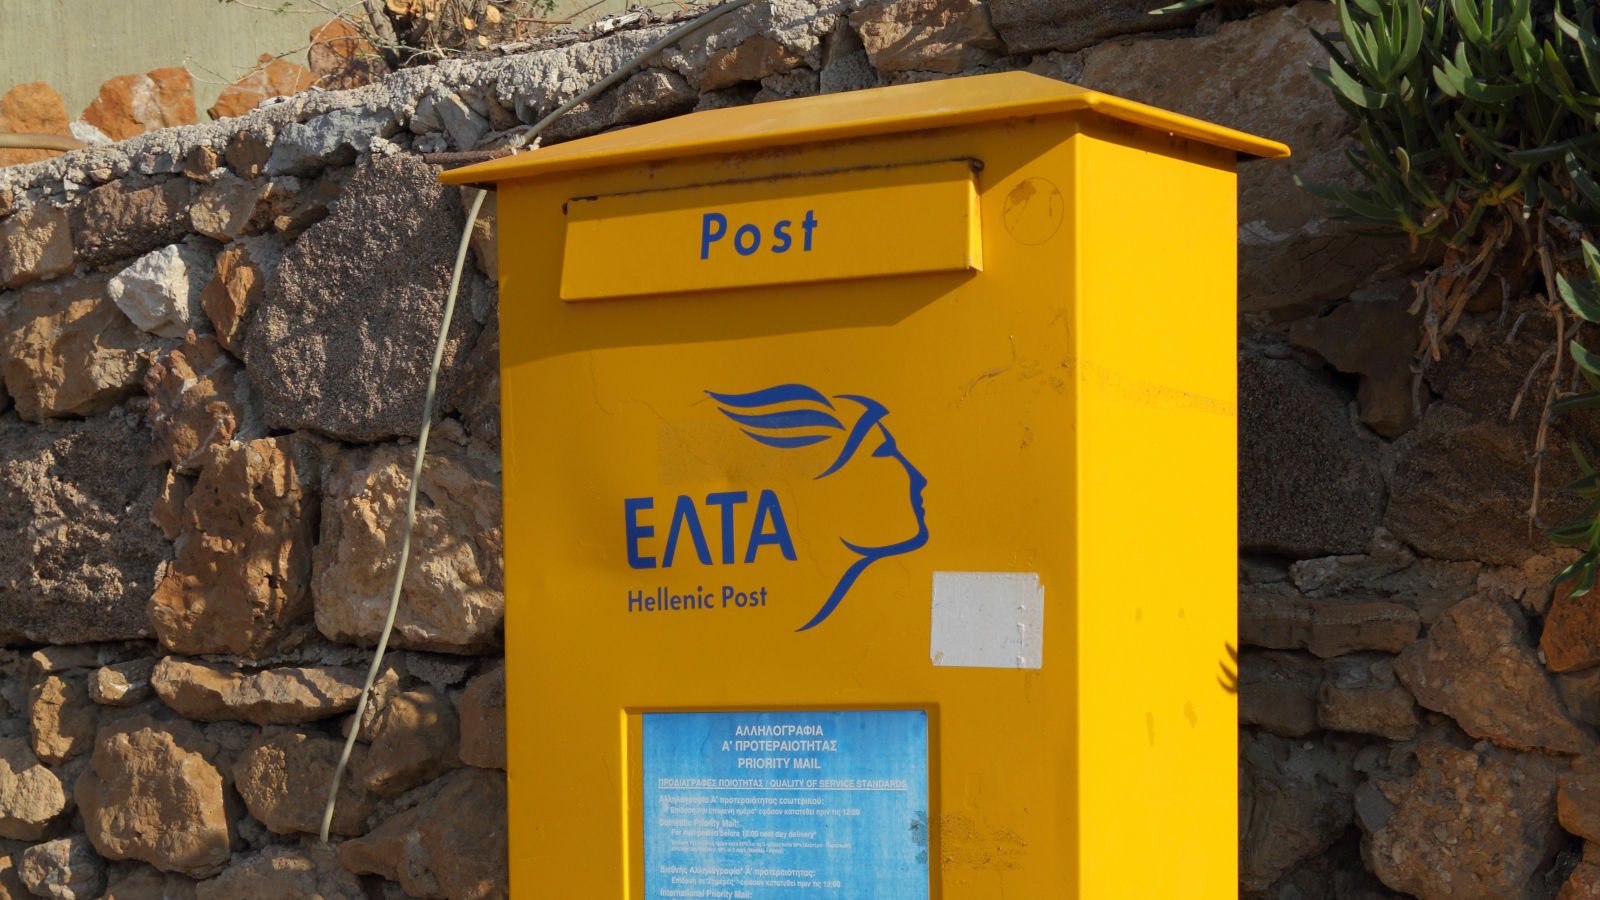 Yunanistan'ın kamu posta hizmeti fidye yazılımı saldırısı nedeniyle çevrimdışı